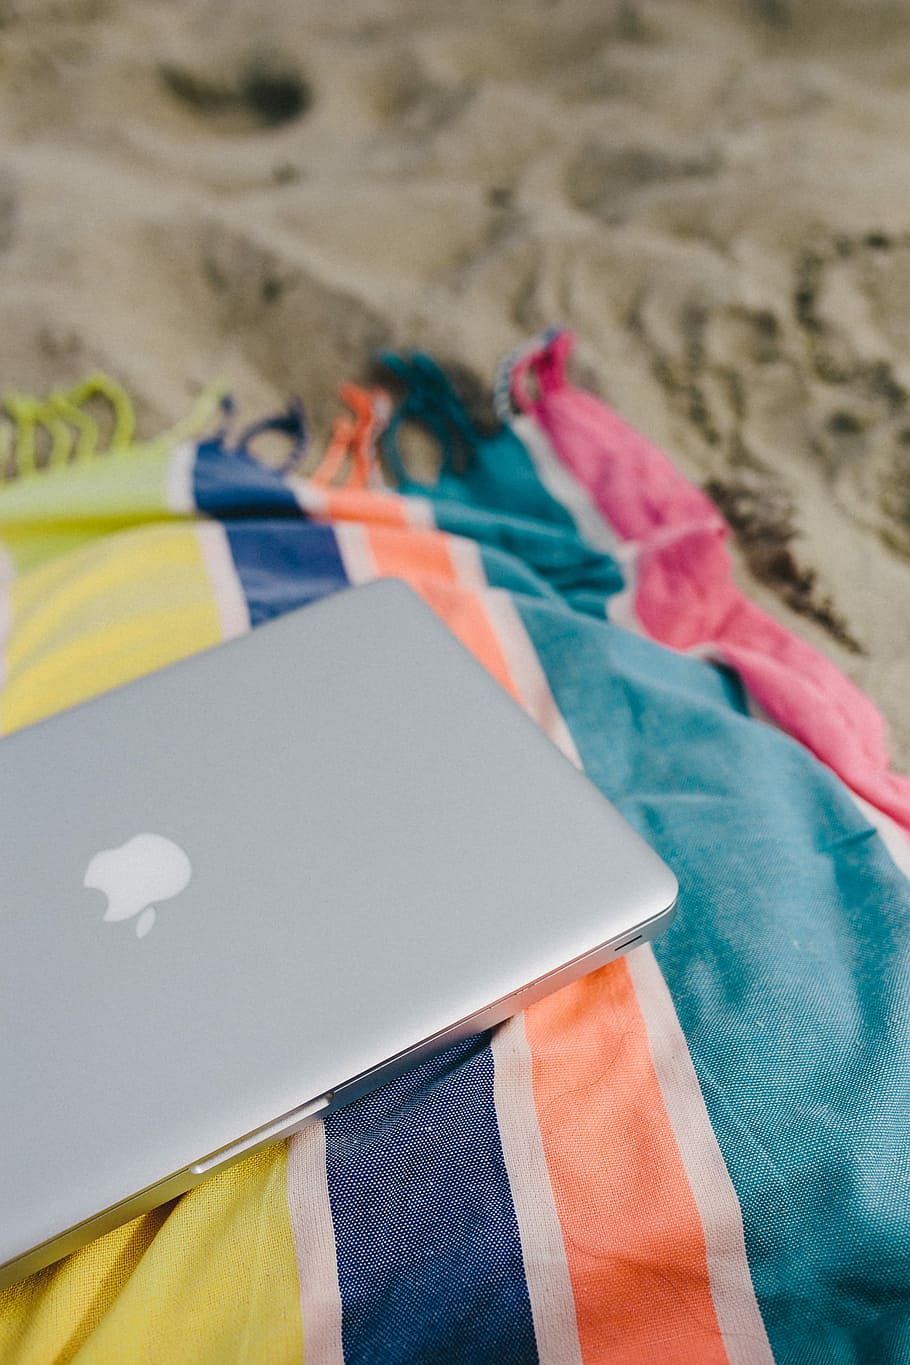 bersama-sama, pantai, pasir, musim panas, komputer, macbook, laptop, selimut, liburan, bendera